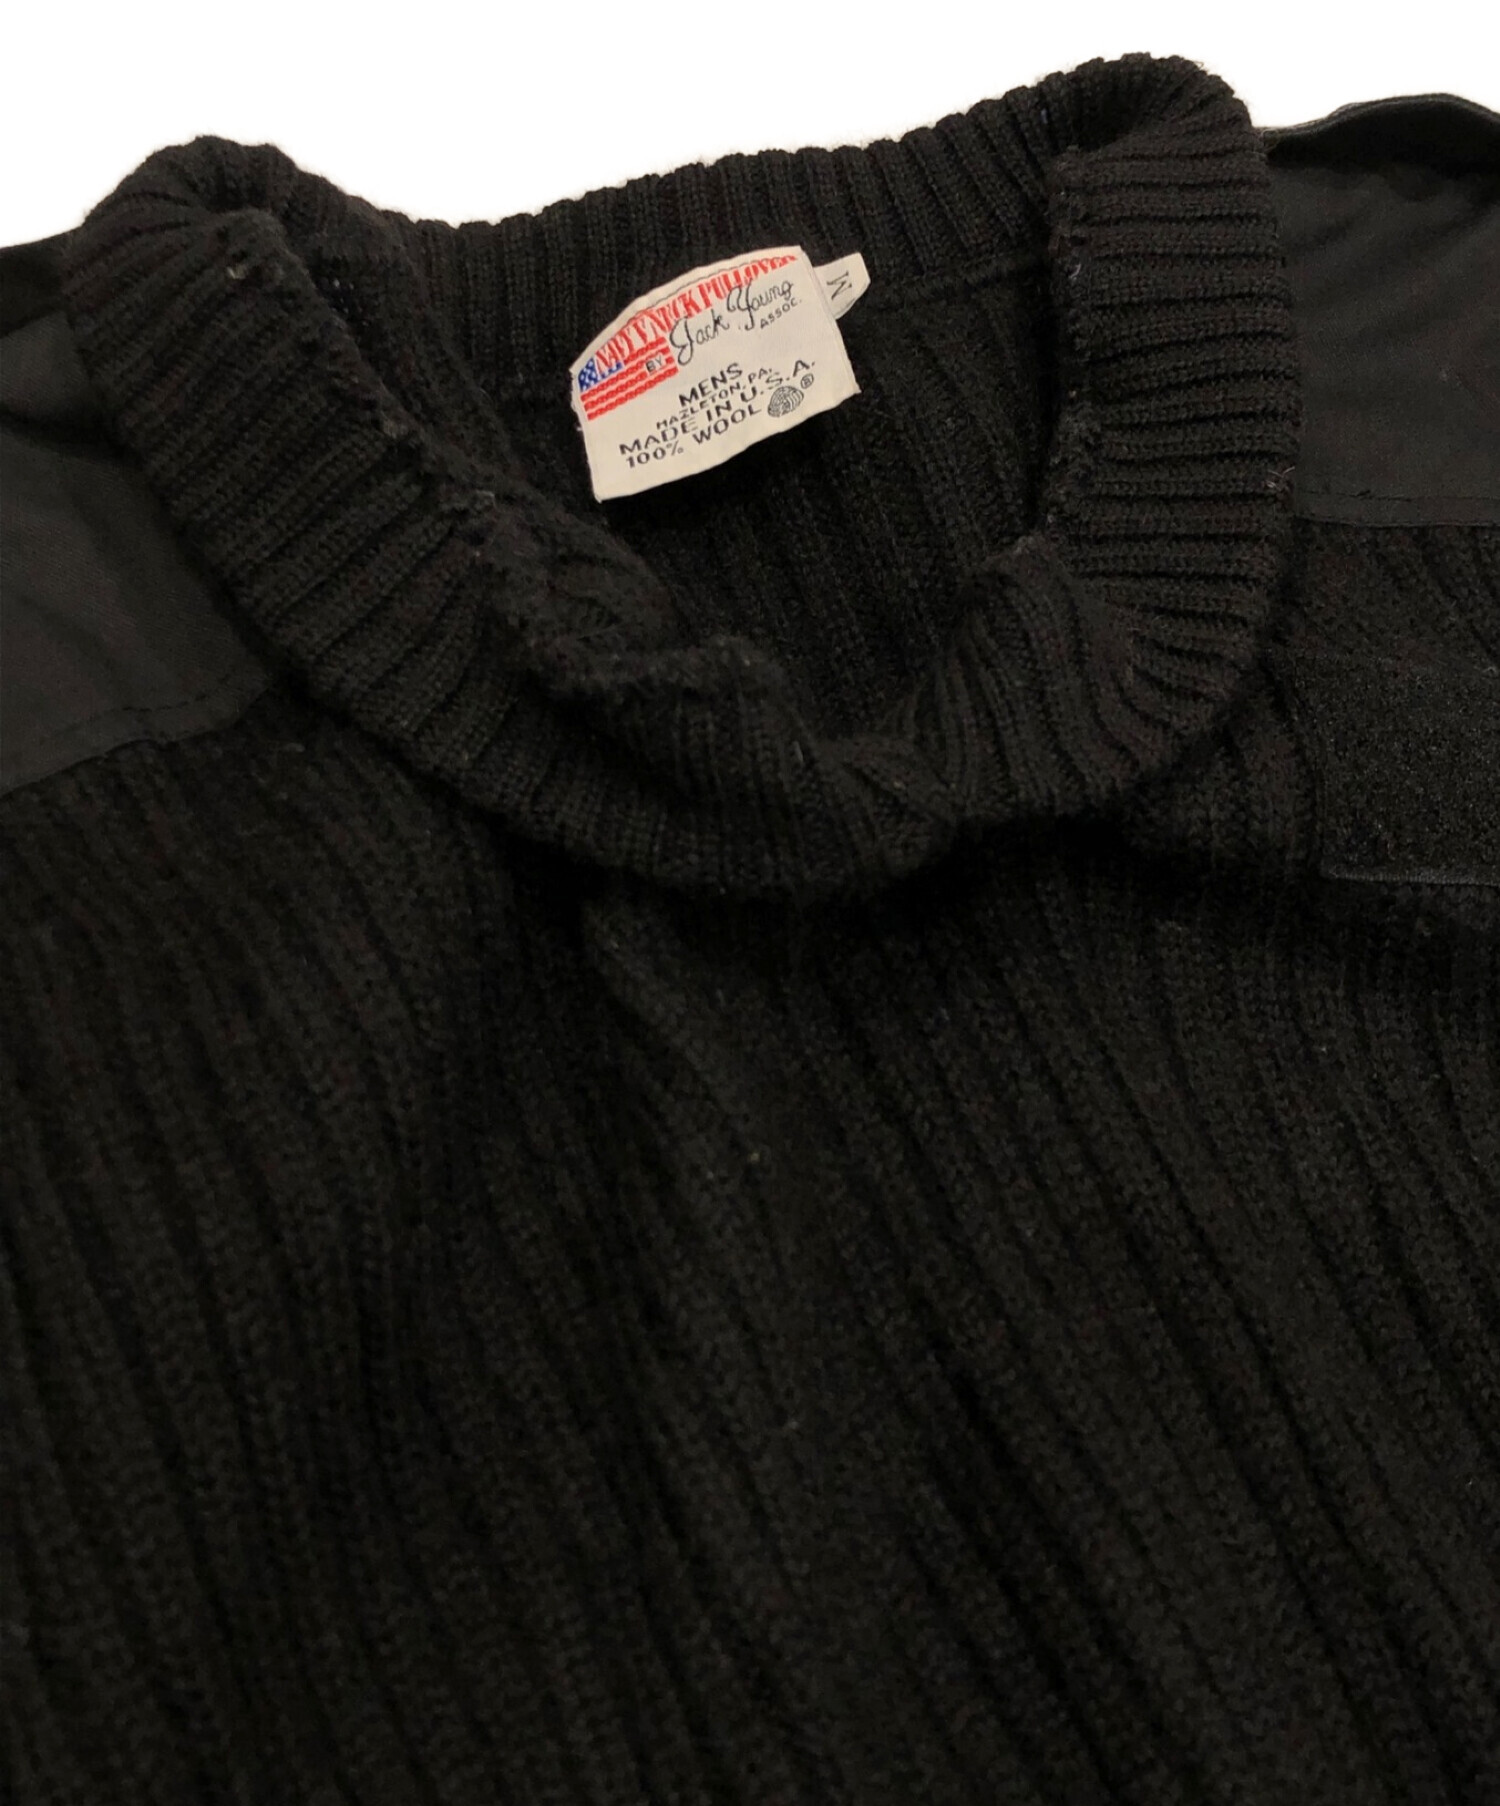 ミリタリーコマンドセーター (ミリタリーコマンドセーター) ミリタリーコマンドセーター ブラック サイズ:M